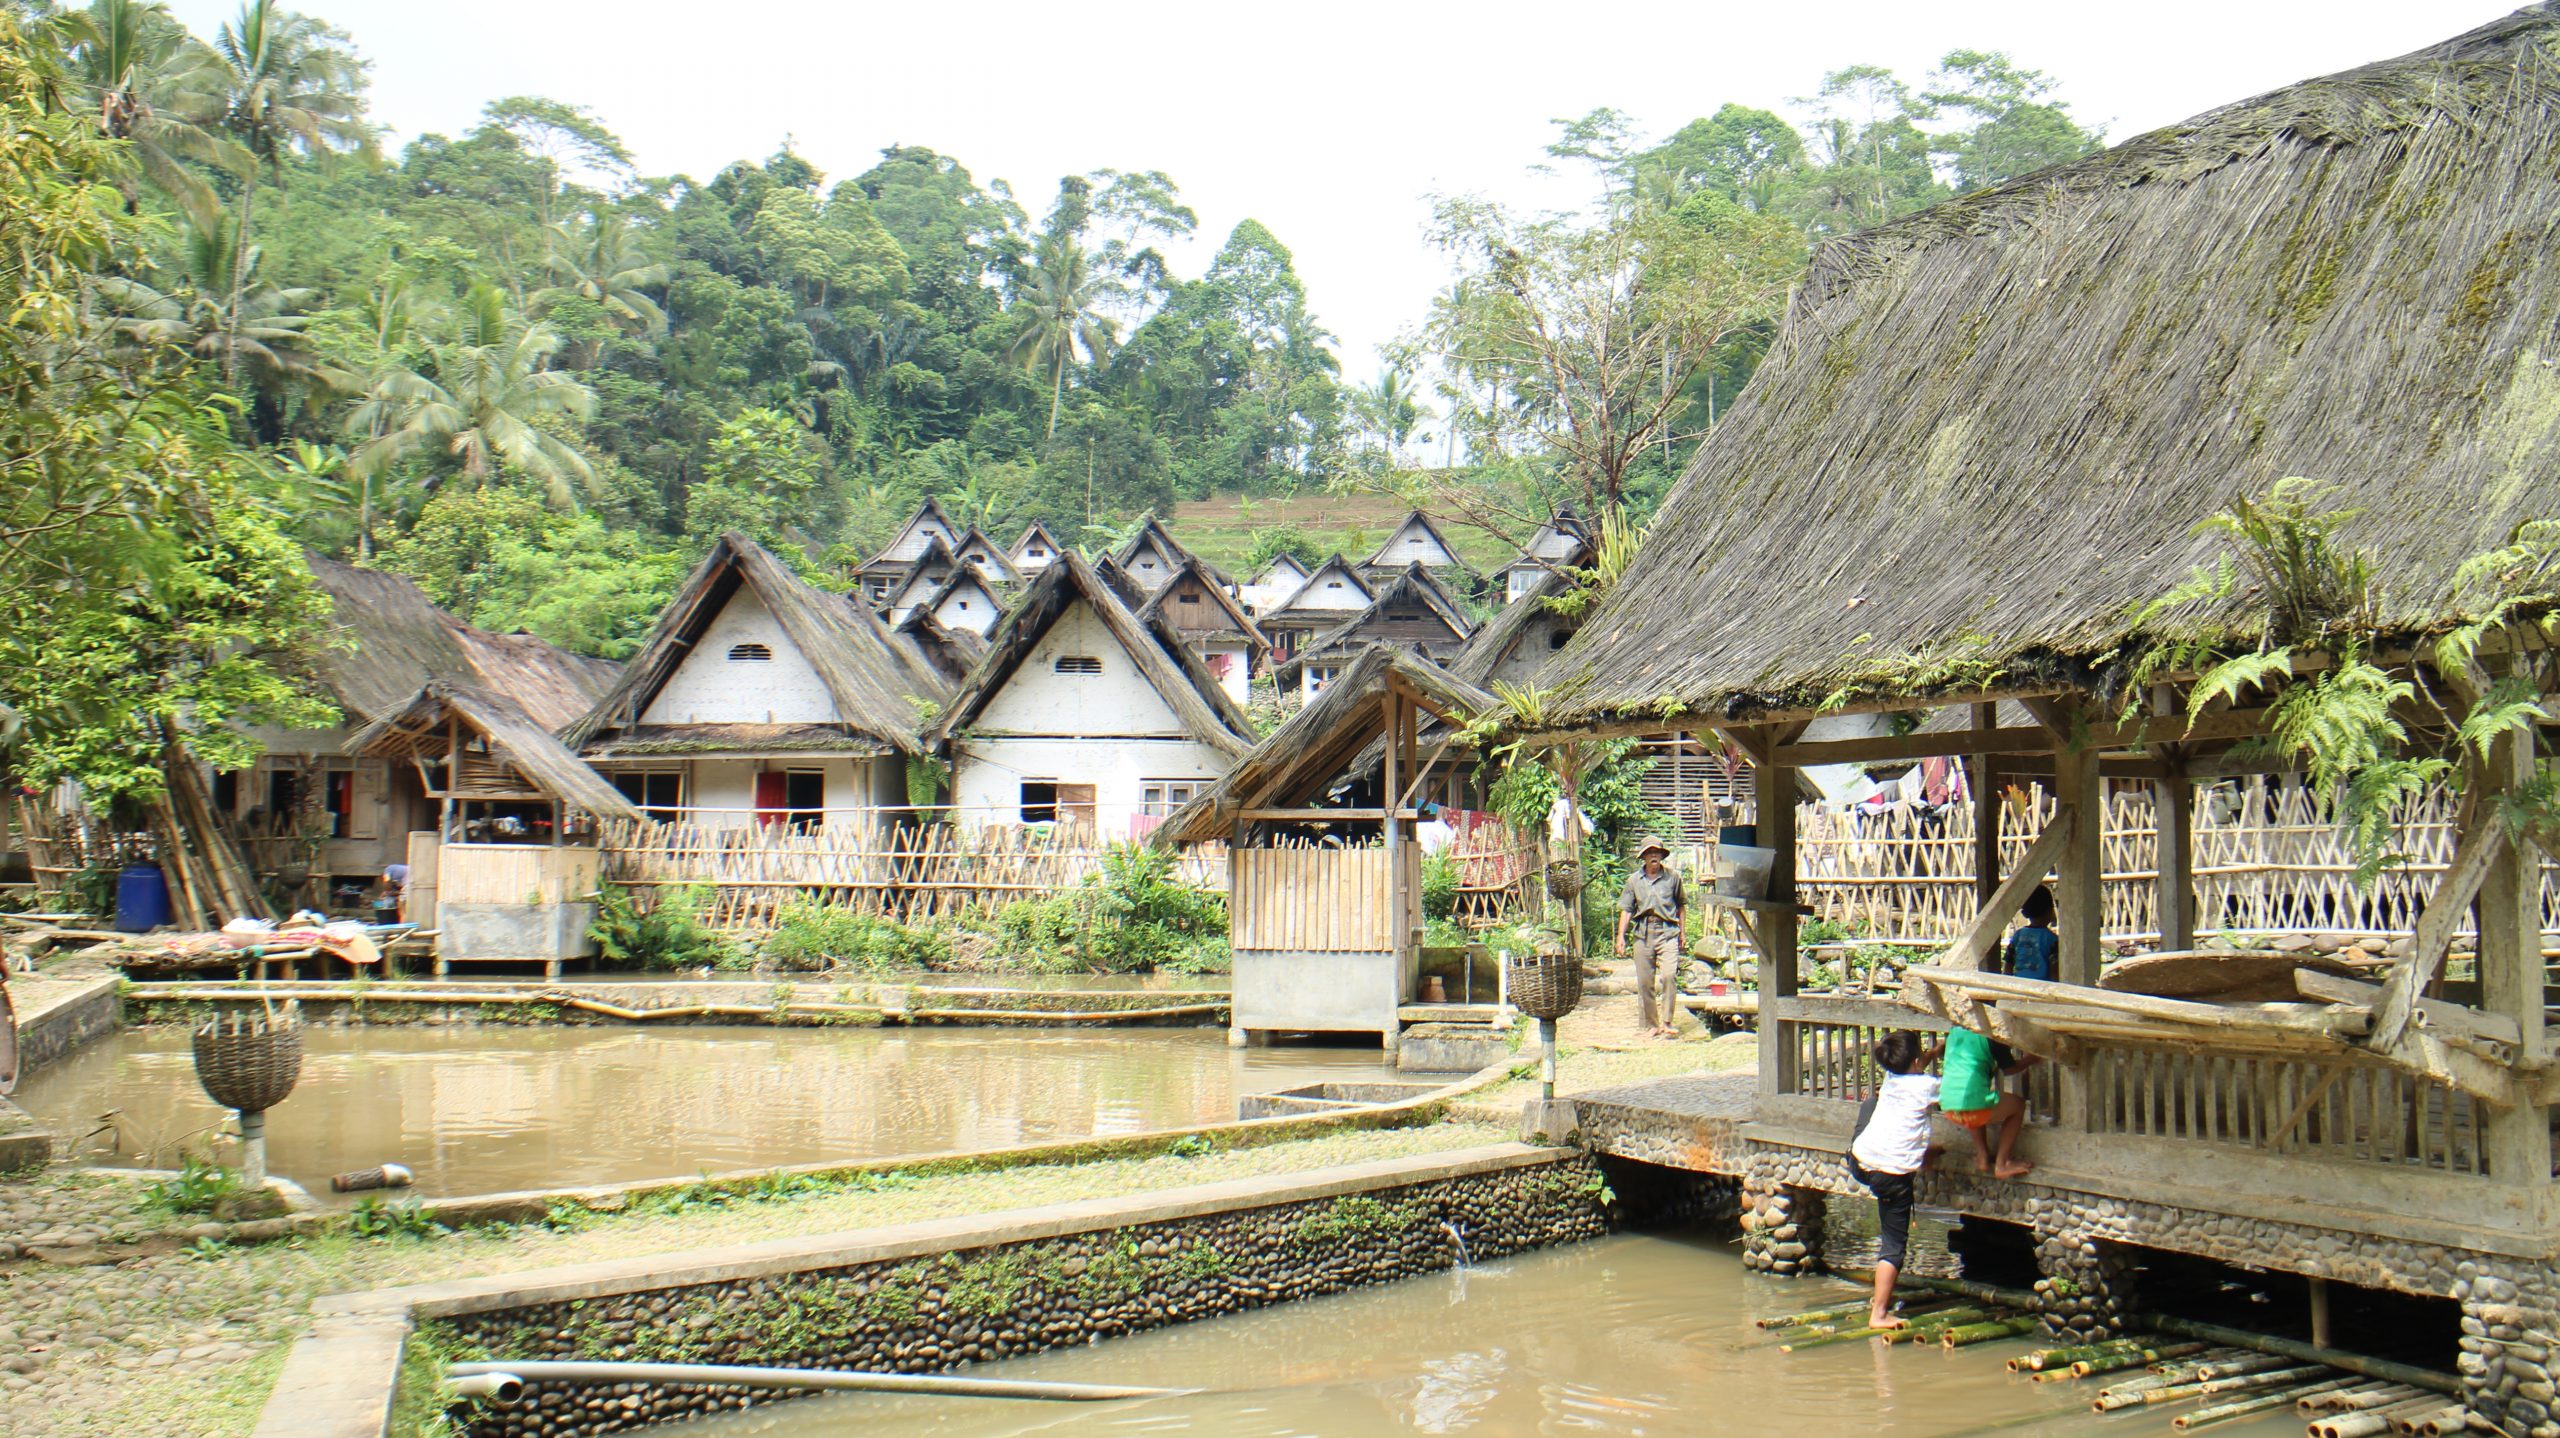 Liburan yang Menyenangkan bersama Keluarga, Mengulik Keunikan Desa-desa Wisata di Indonesia